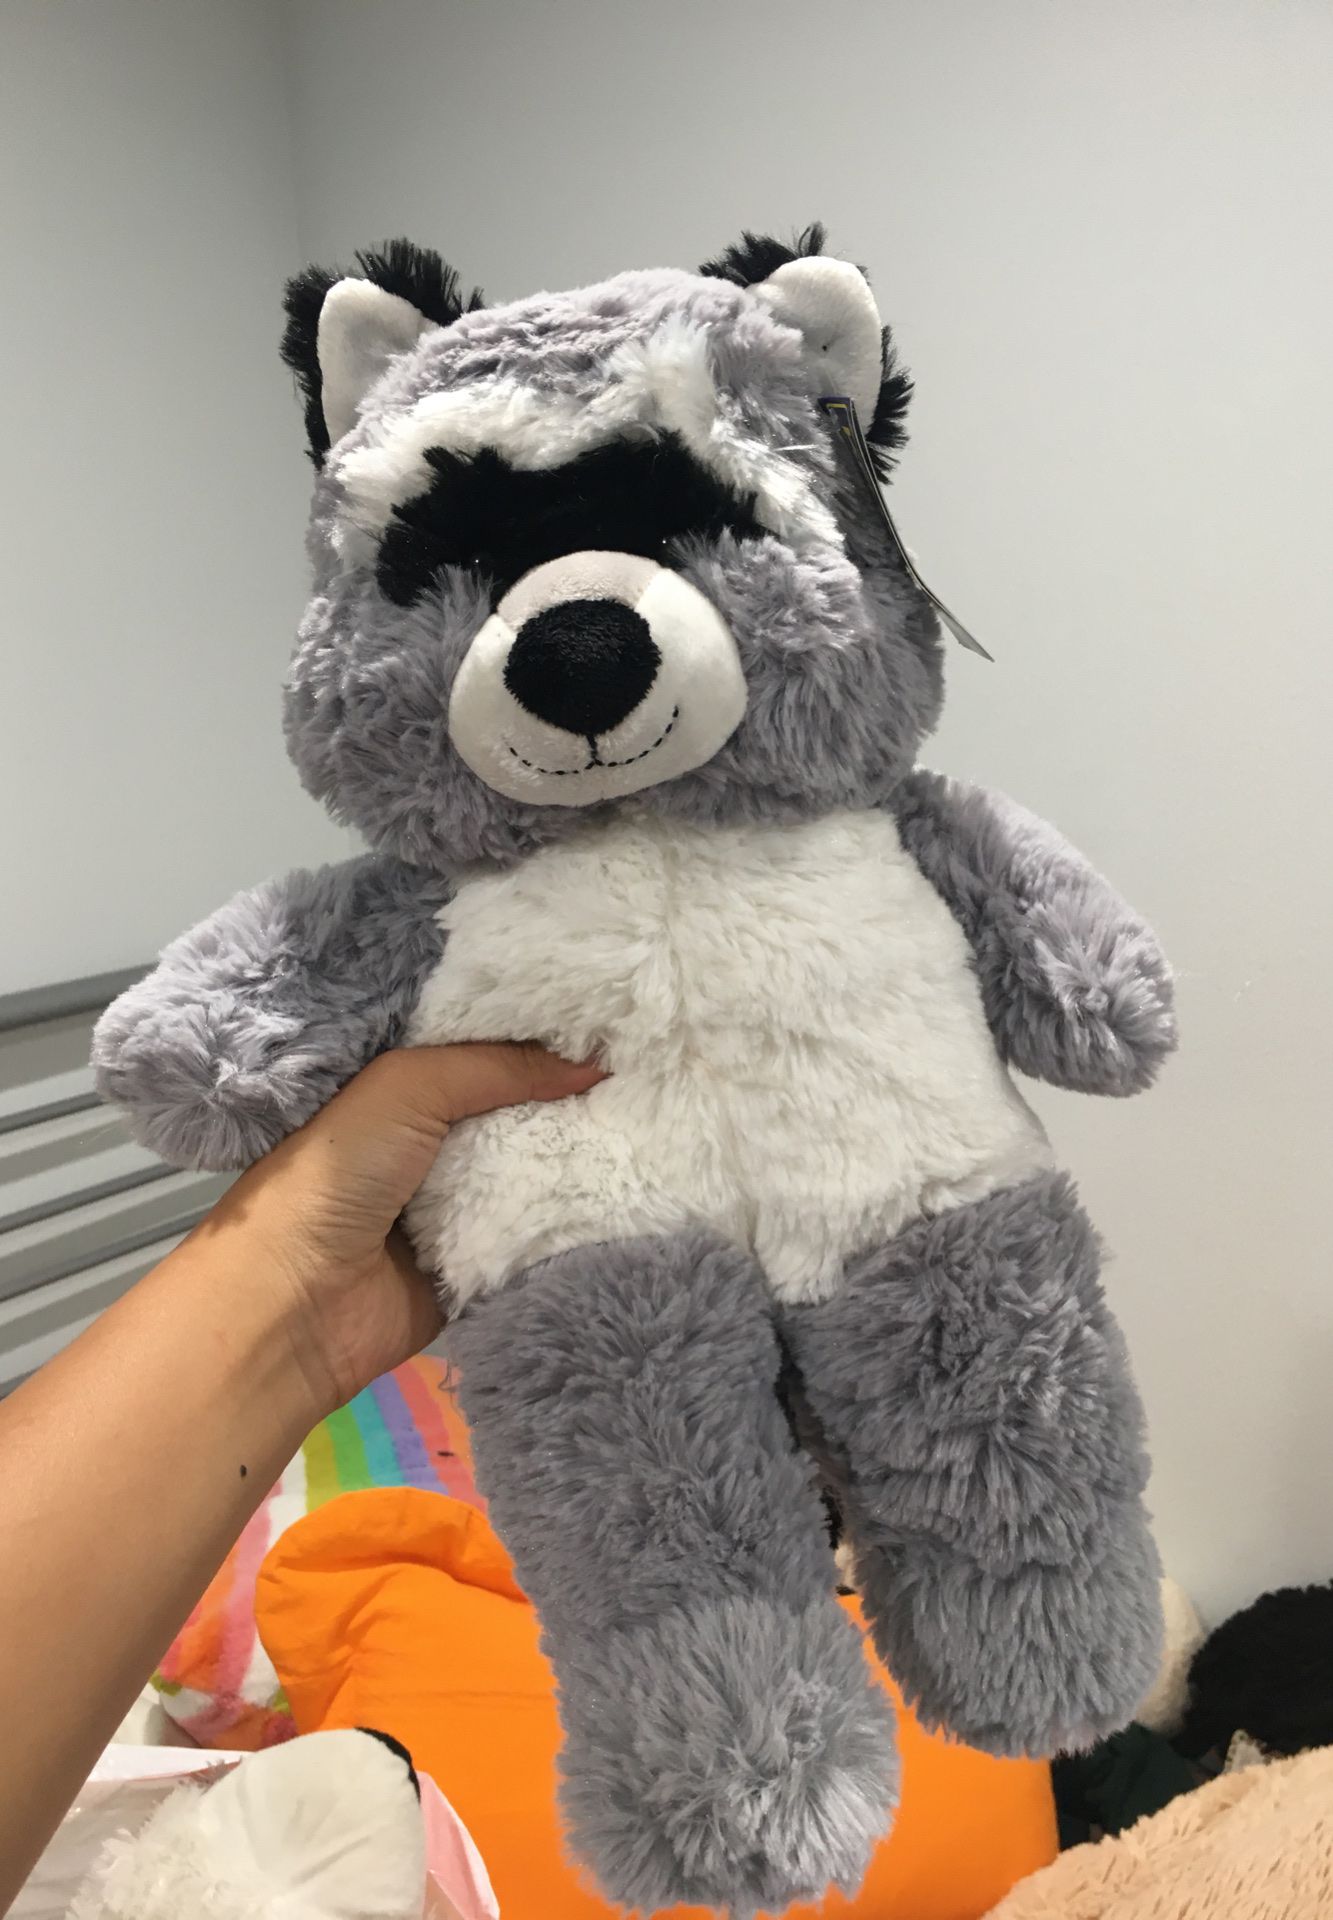 raccoon stuffed animal toy